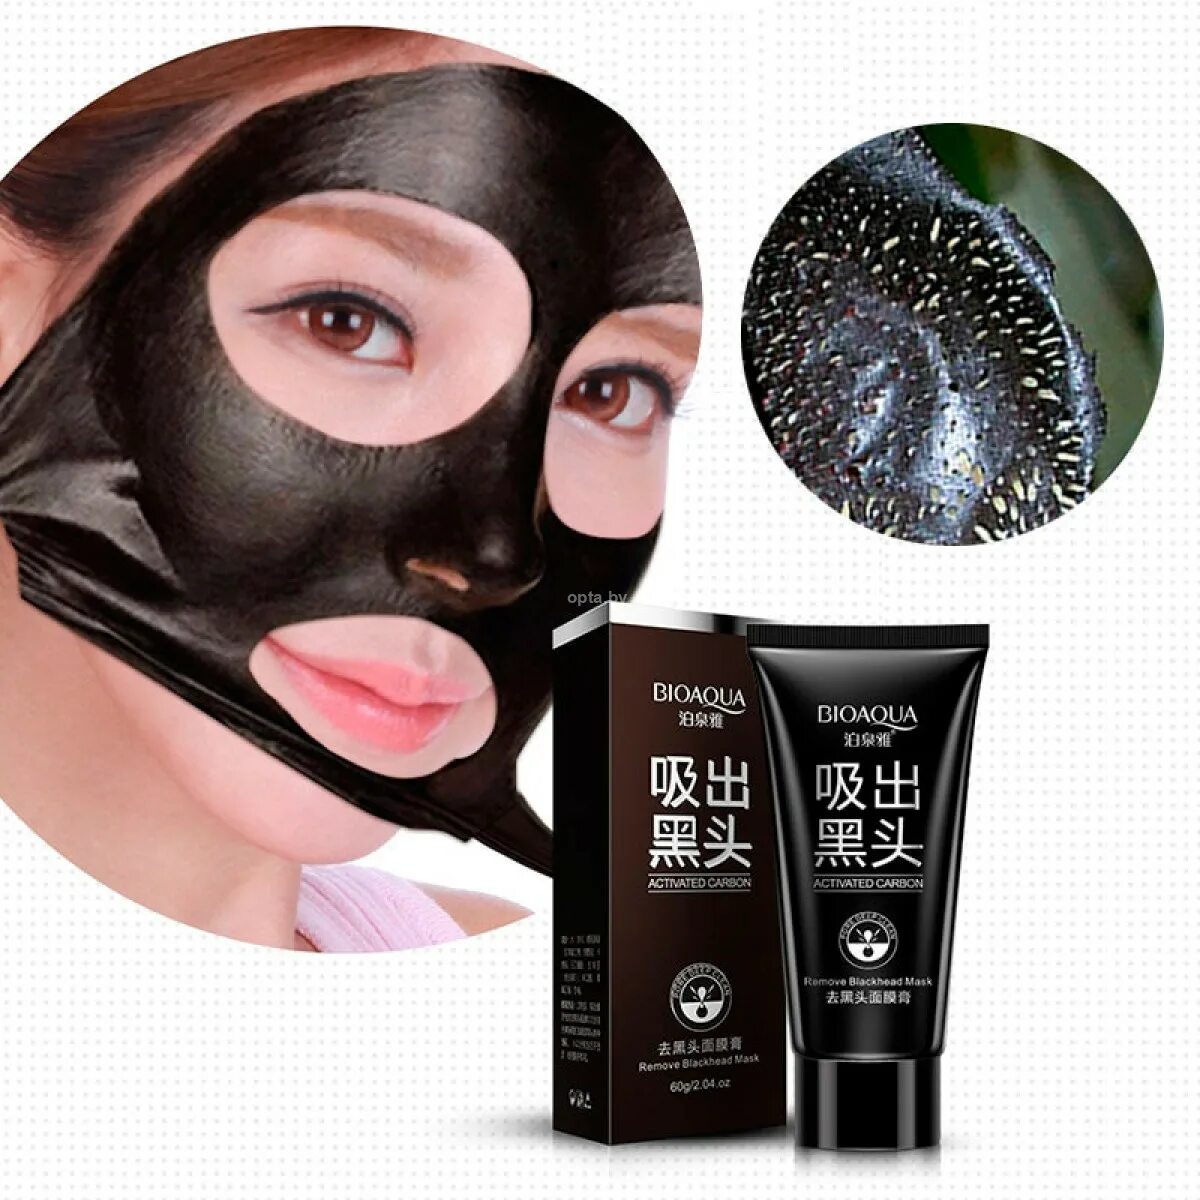 Очищающие маски с углем. Маска BIOAQUA Black Mask. Black Mask Deep Cleansing BIOAQUA. Маска BIOAQUA от черных точек с углем 60гр.. Маска для лица BIOAQUA Blackhead removal Bamboo Charcoal Black face Mask Deep Cleaning 60 ml.